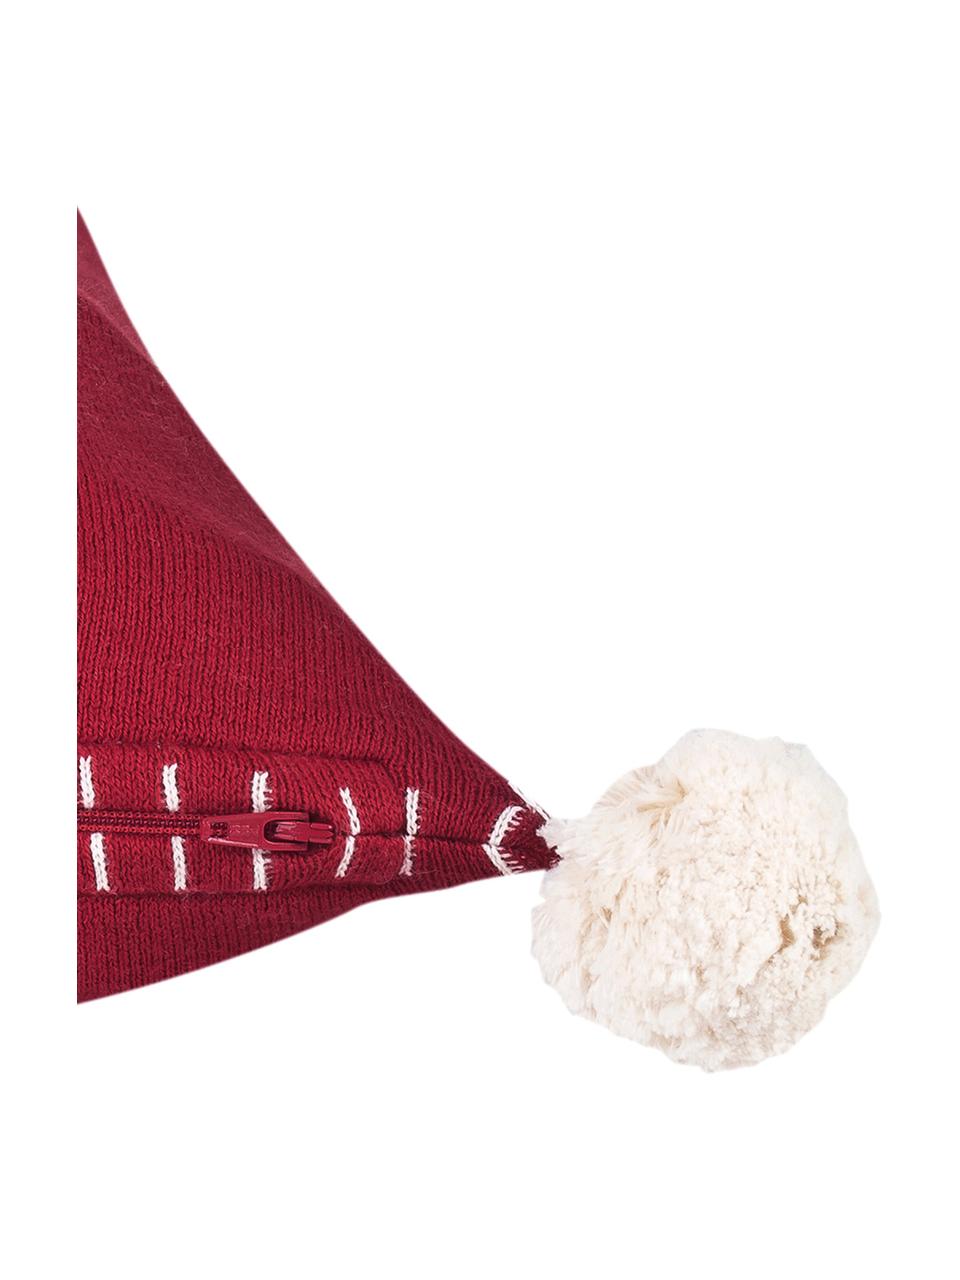 Strick-Kissenhülle Anders mit Hirschmotiv und Bommeln, Baumwolle, Rot, Cremeweiß, B 40 x L 40 cm